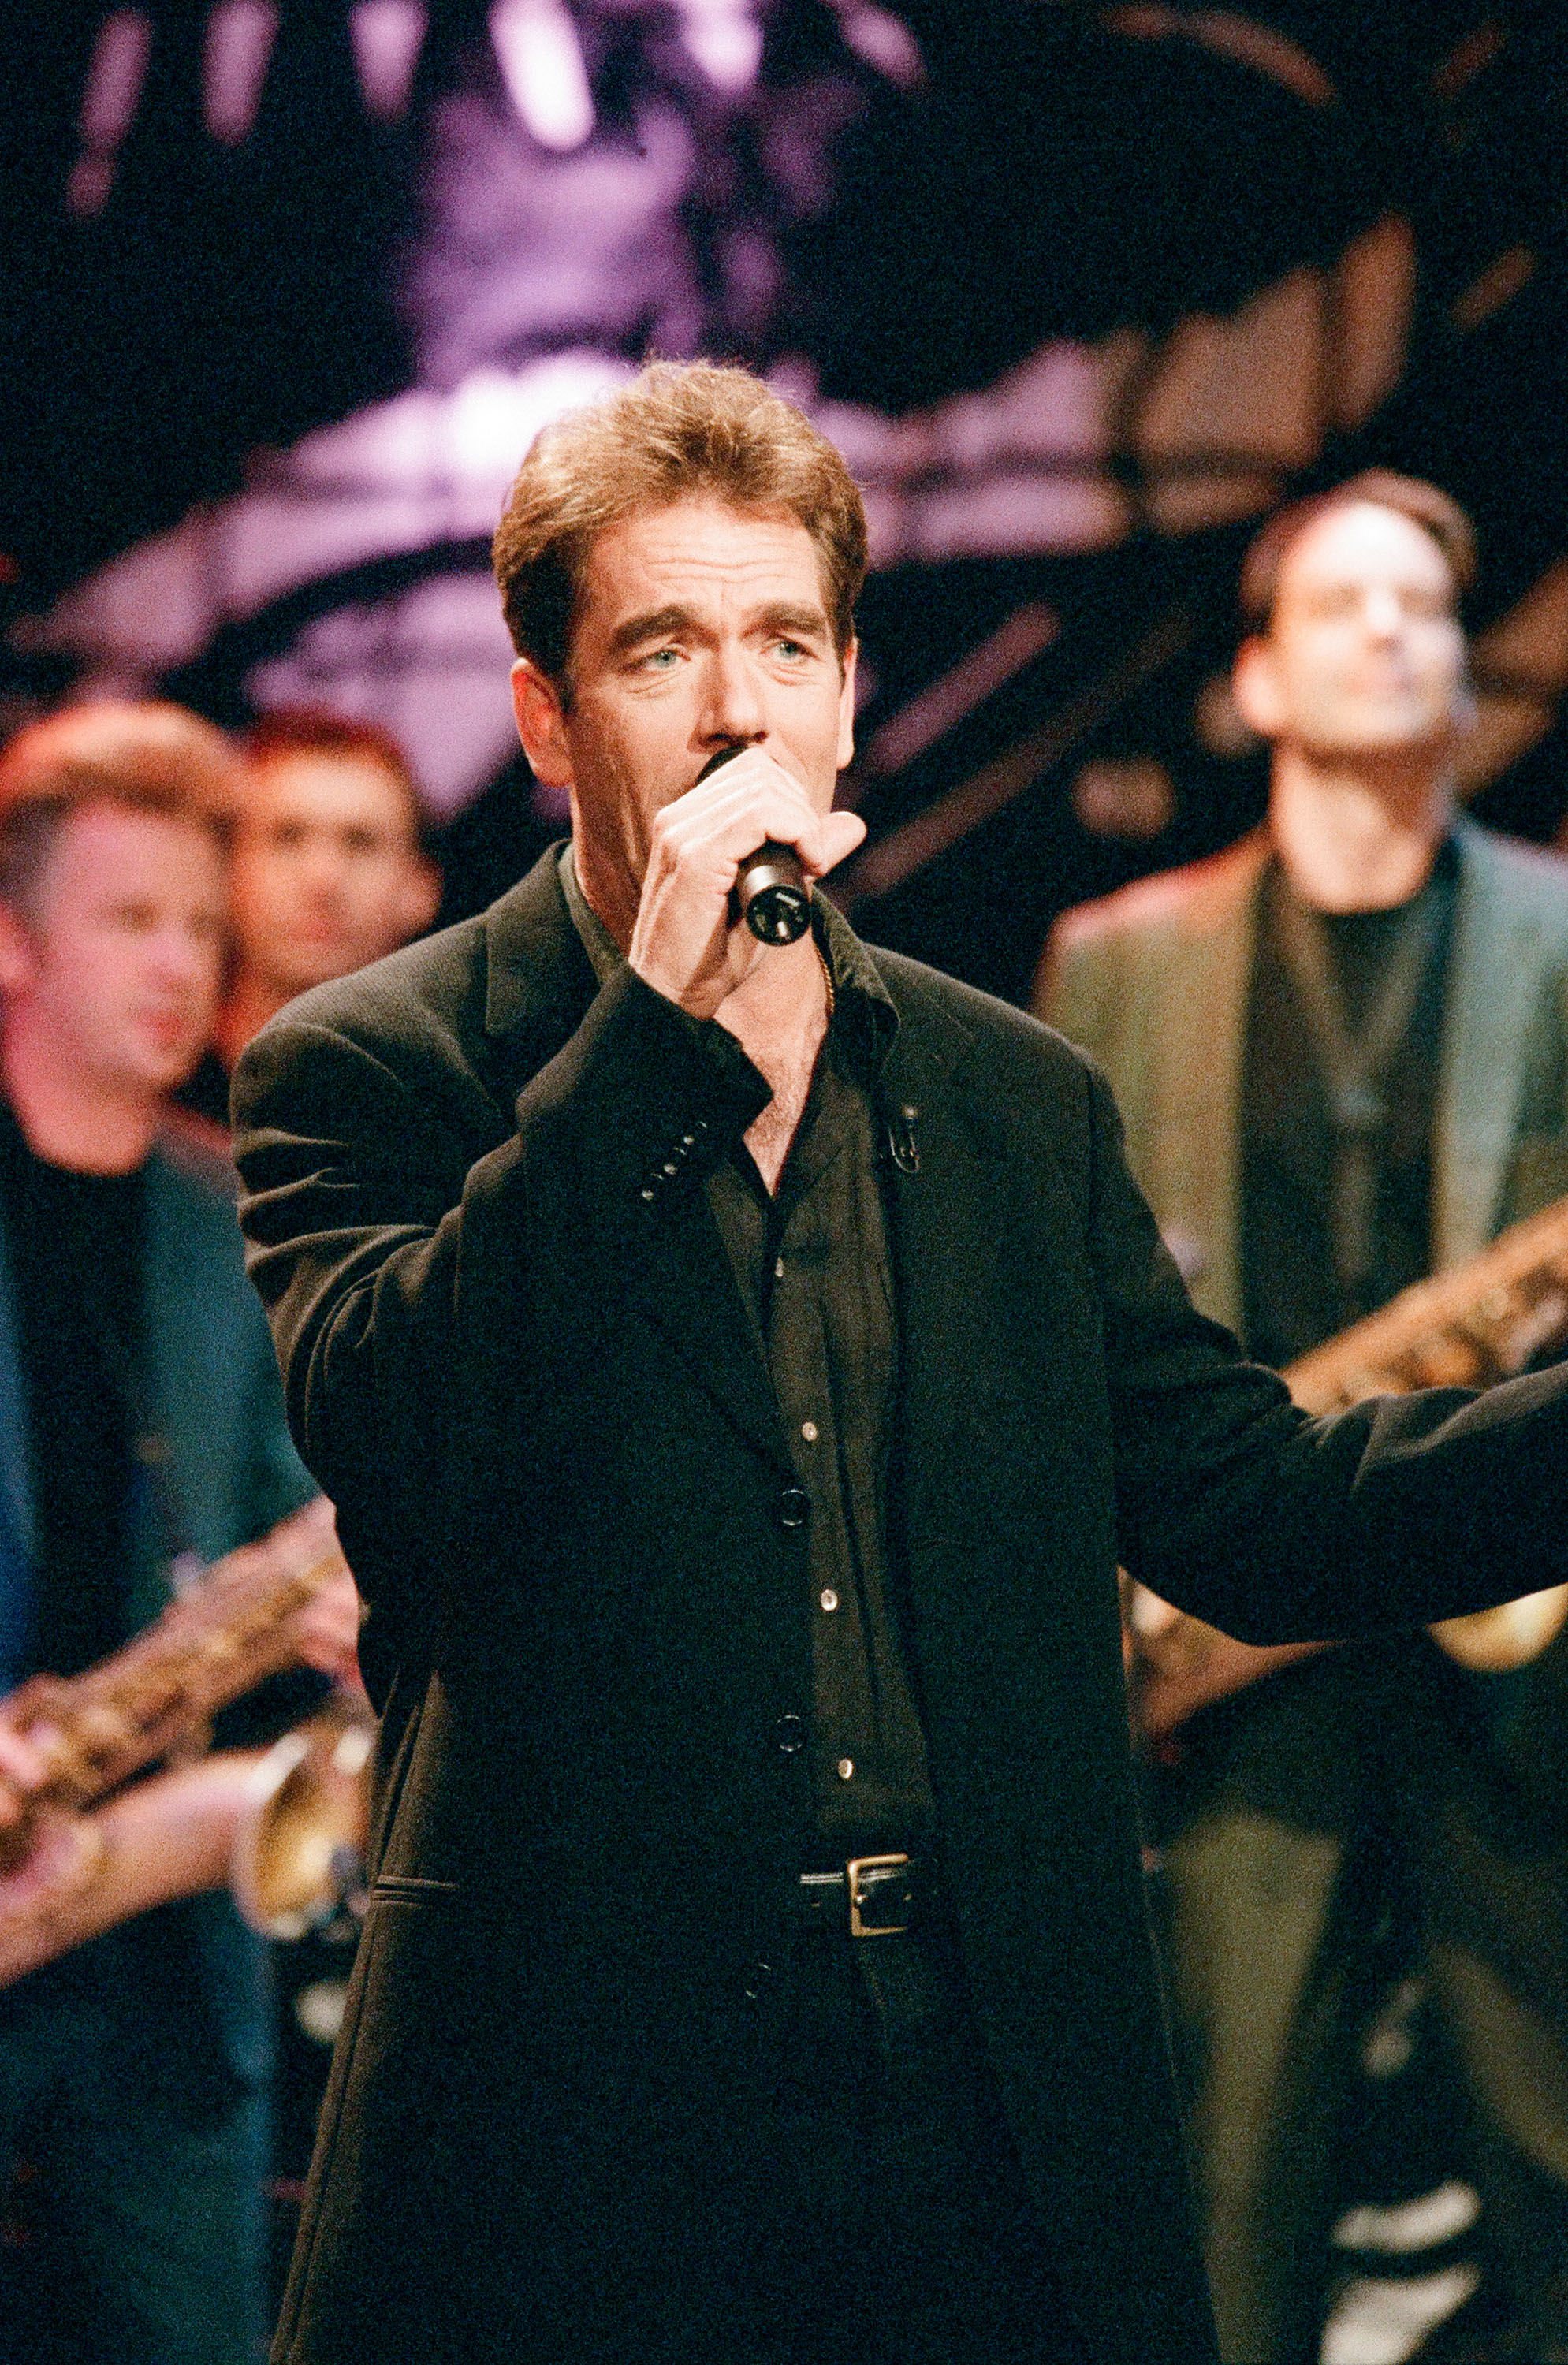 La estrella de Hollywood durante una actuación en directo el 26 de noviembre de 1996. | Fuente: Getty Images